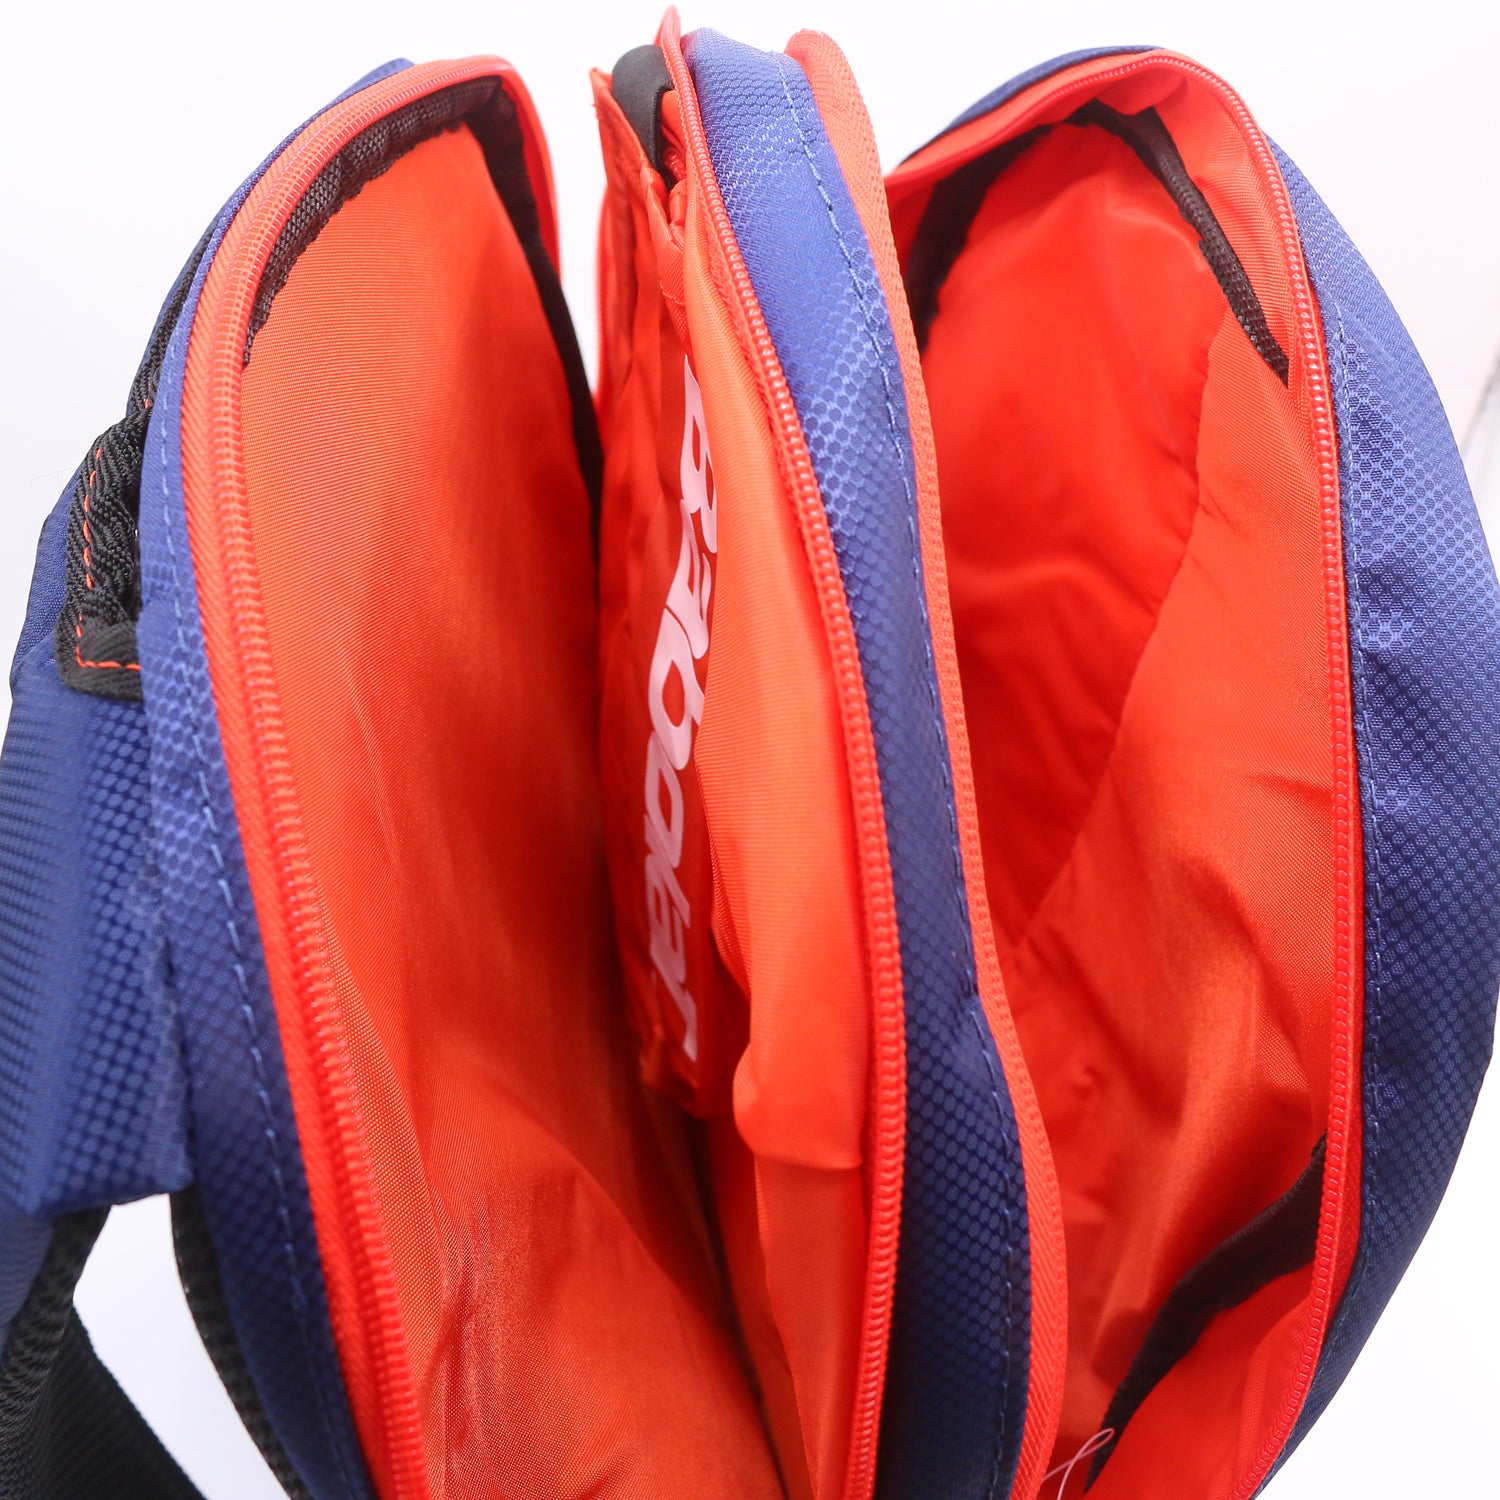 Babolat Team Line 330 Backpack , Navy Blue/Pink - Best Price online Prokicksports.com